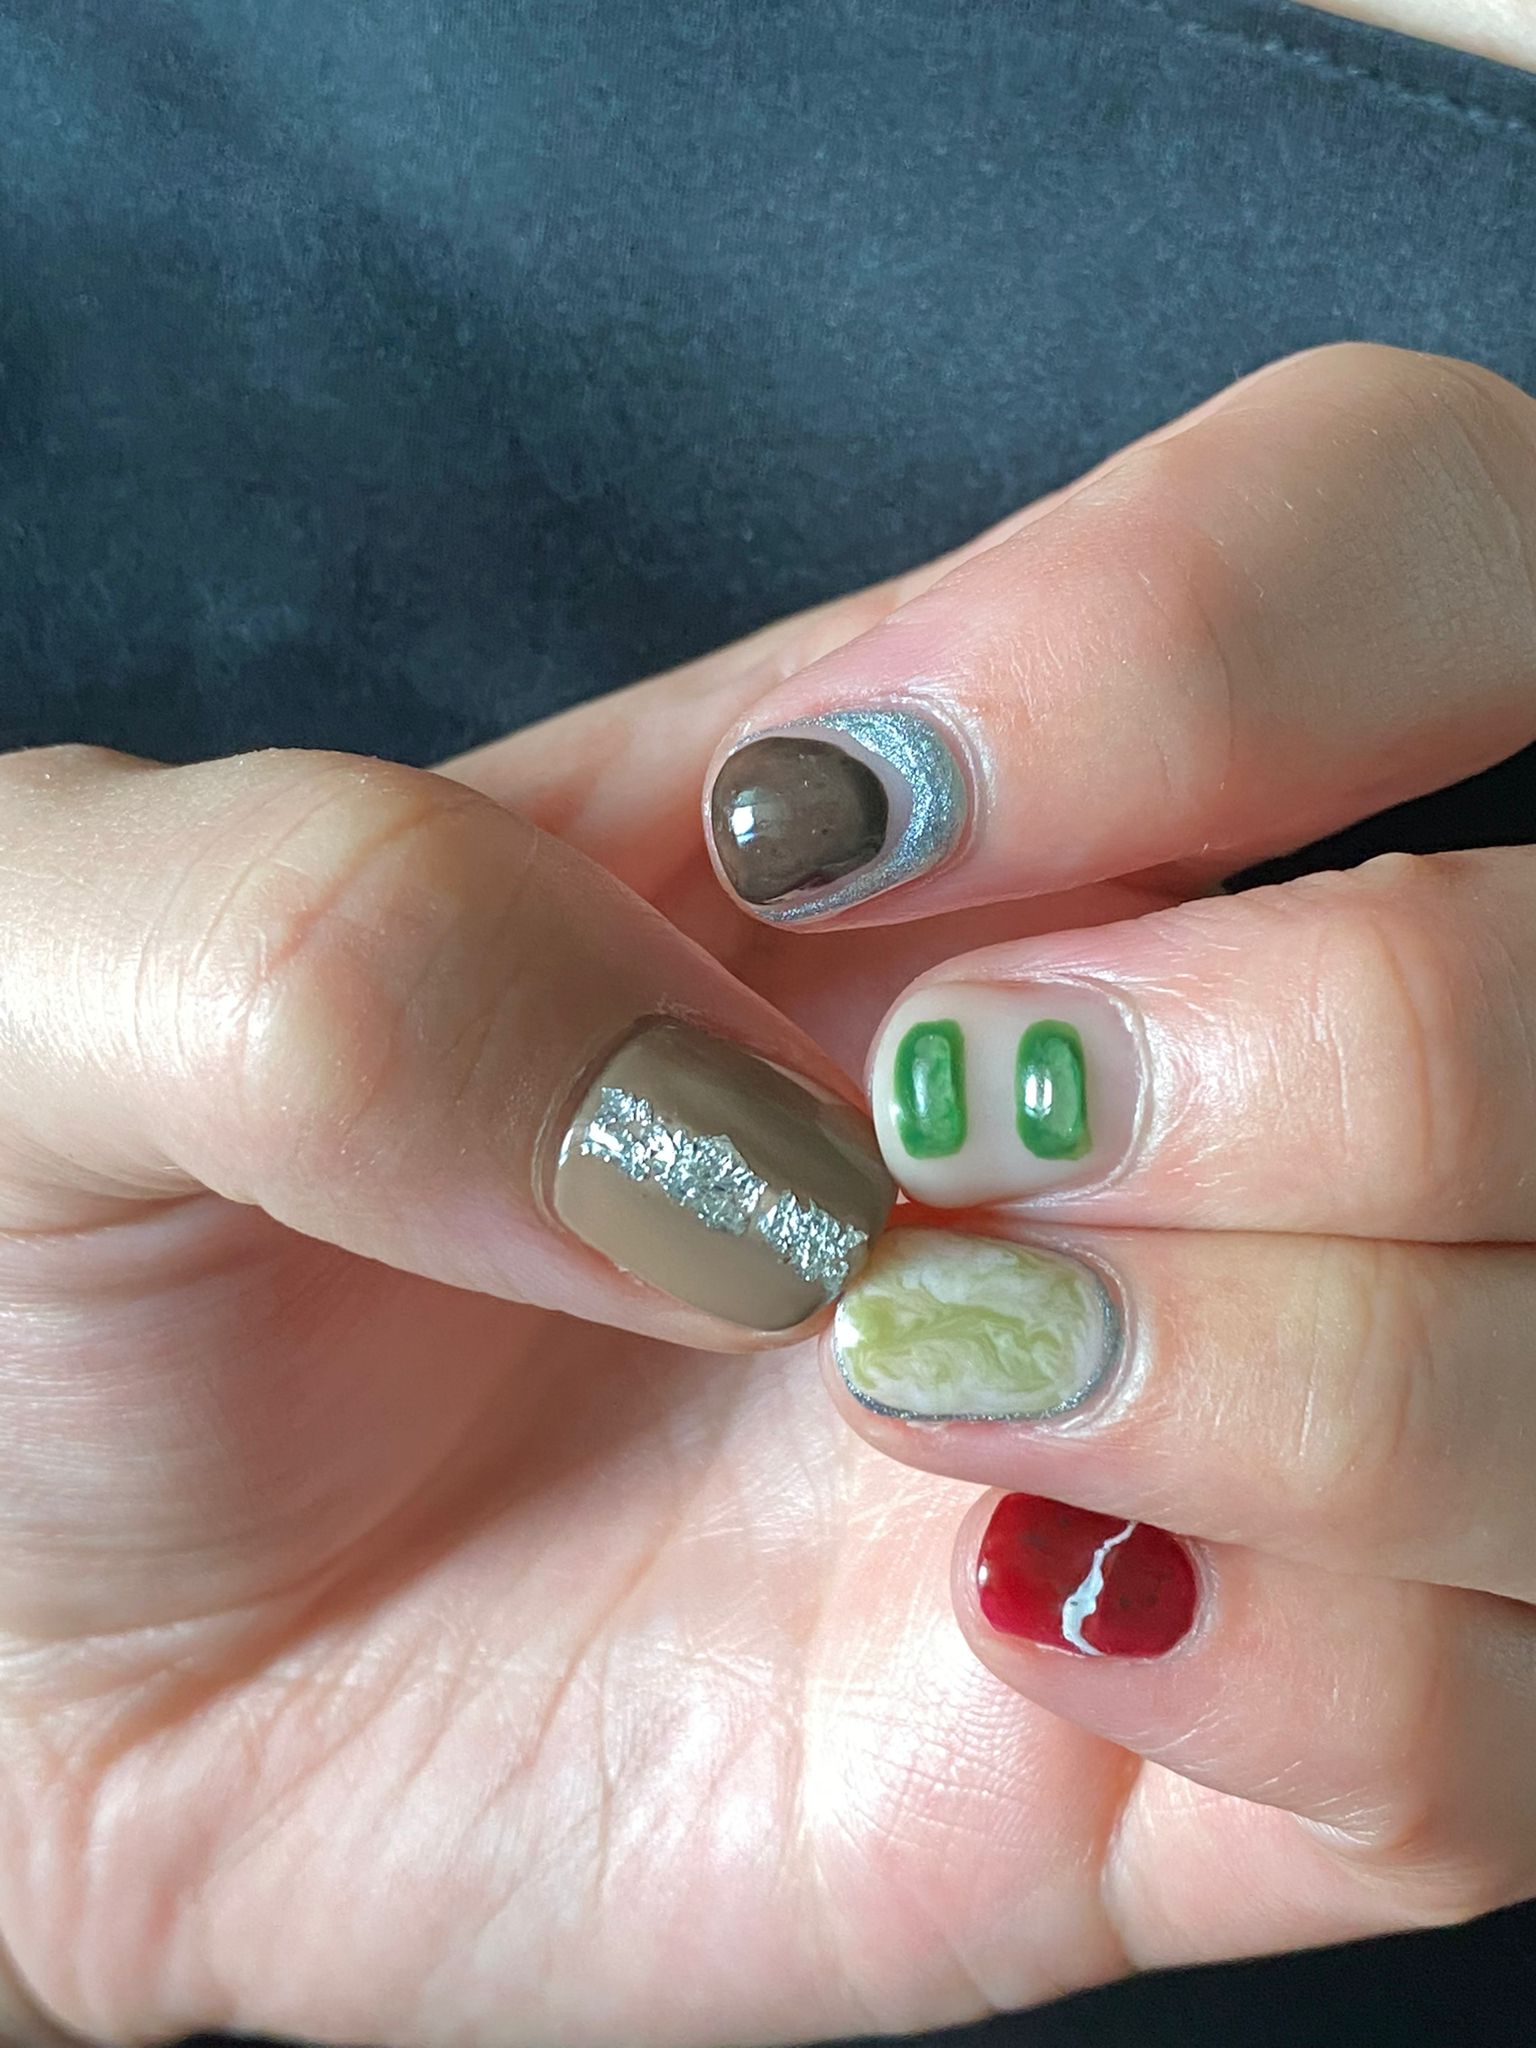 Yumi Nu's nails. Nail art by Marina Tee.